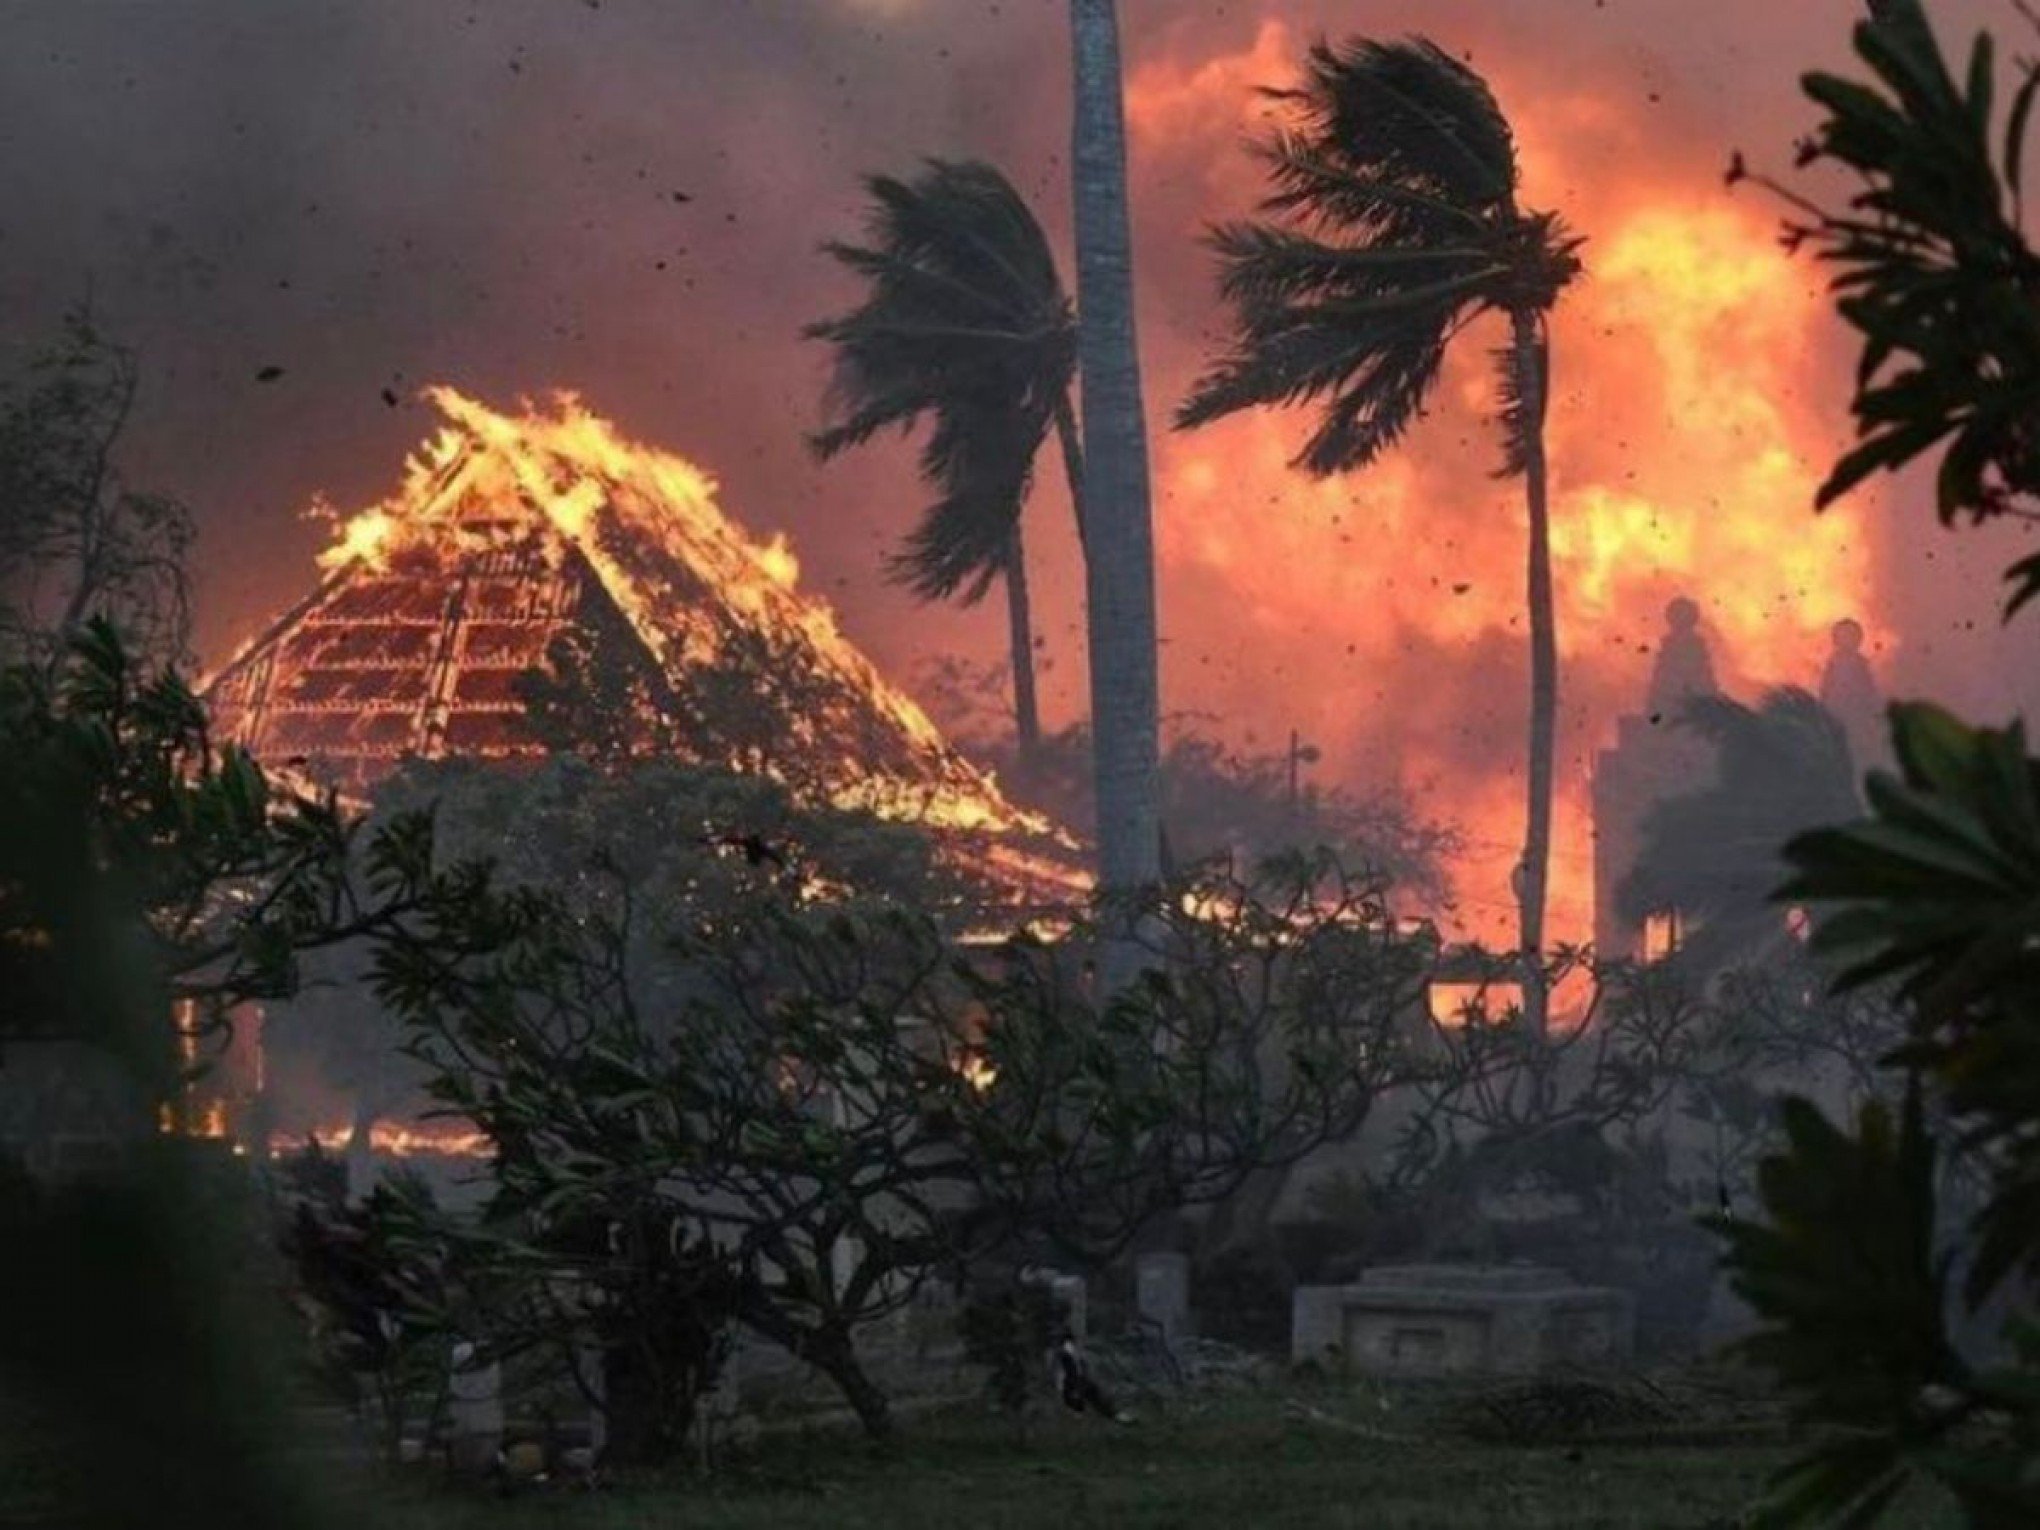 Saiba o que motivou tempestade de fogo que fez pelo menos 12 pessoas se jogarem no oceano para fugir das chamas no Havaí - Mundo - Jornal NH